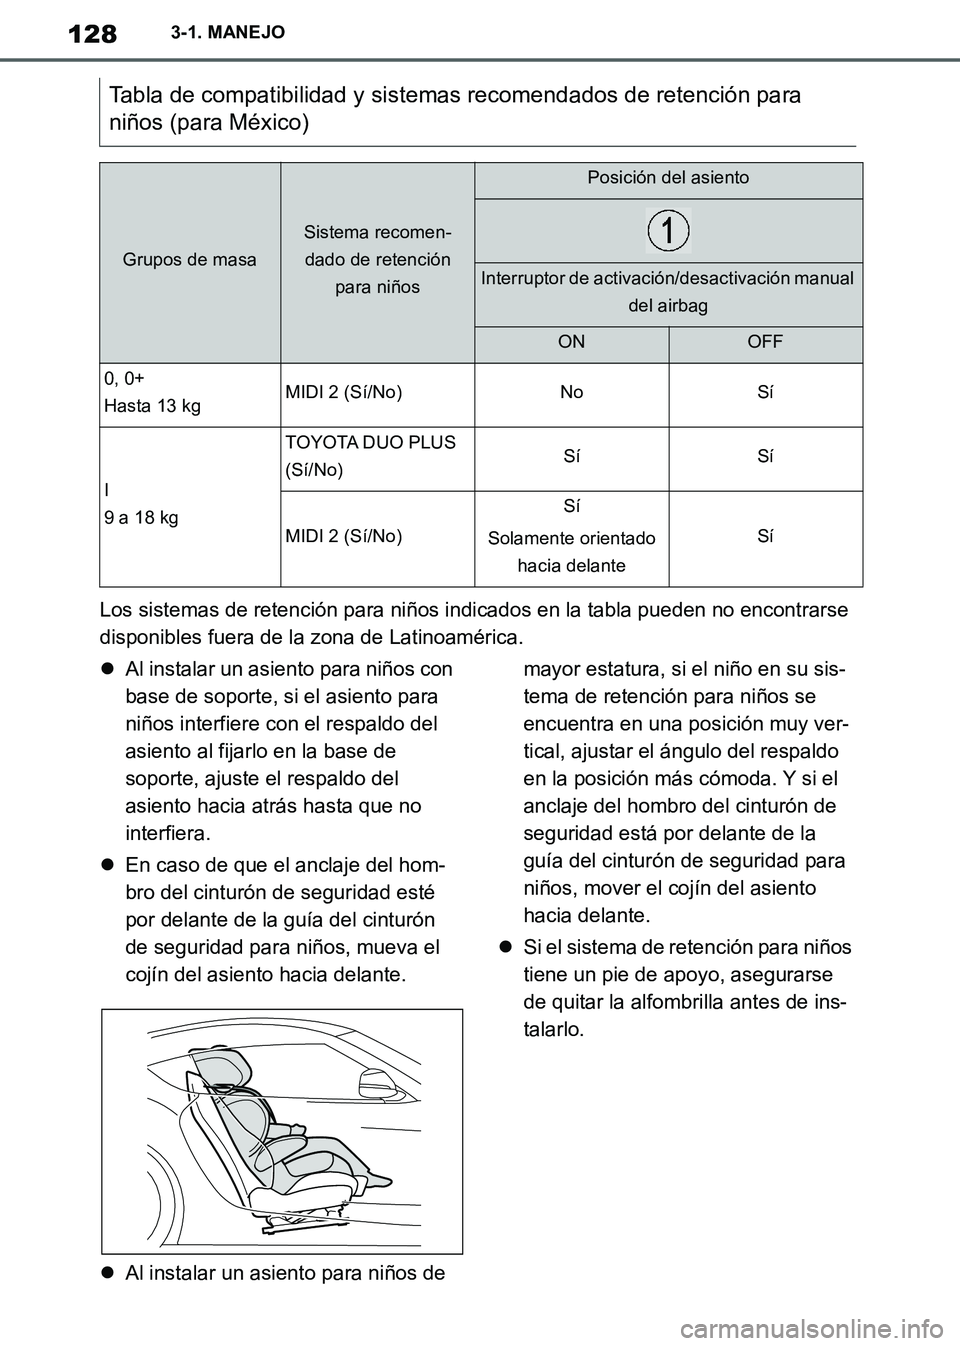 TOYOTA SUPRA 2019  Manuale de Empleo (in Spanish) 128
Supra Owners Manual_ES
3-1. MANEJO
Los sistemas de retención para niños indicados en la tabla pueden no encontrarse 
disponibles fuera de la zona de Latinoamérica.
Al instalar un asiento pa